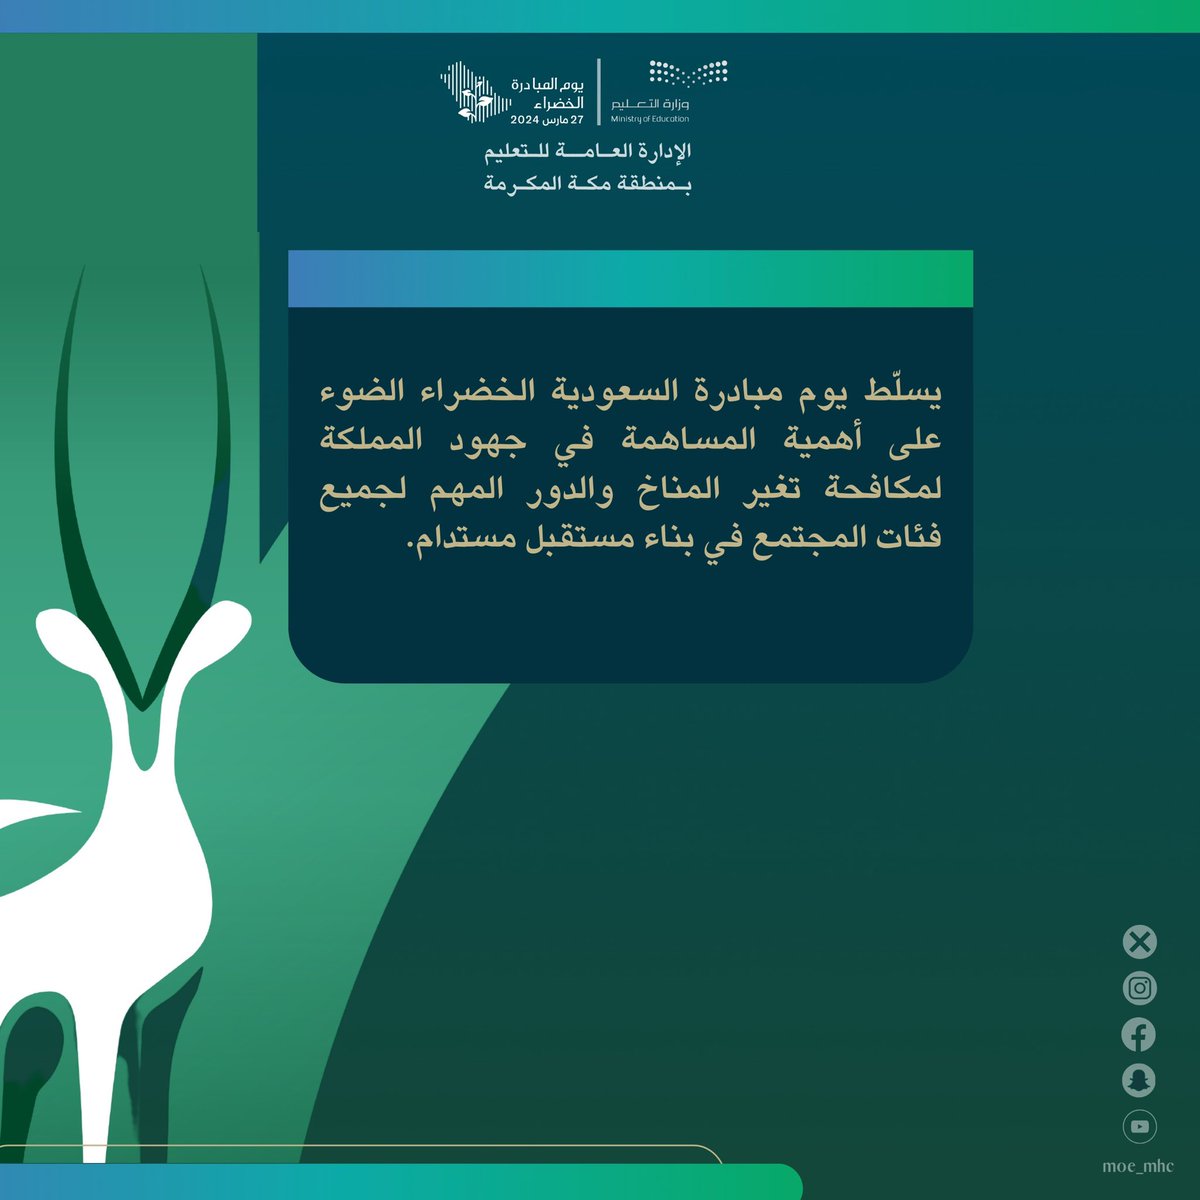 يسلّط يوم
#مبادرة_السعودية_الخضراء 
الضوء على أهمية المساهمة في جهود المملكة
لمكافحة تغير المناخ والدور المهم لجميع فئات المجتمع في بناء مستقبل مستدام.

#تعليم_مكة 
#لمستقبل_ أكثر_استدامة
#ForAGreenerSaudi